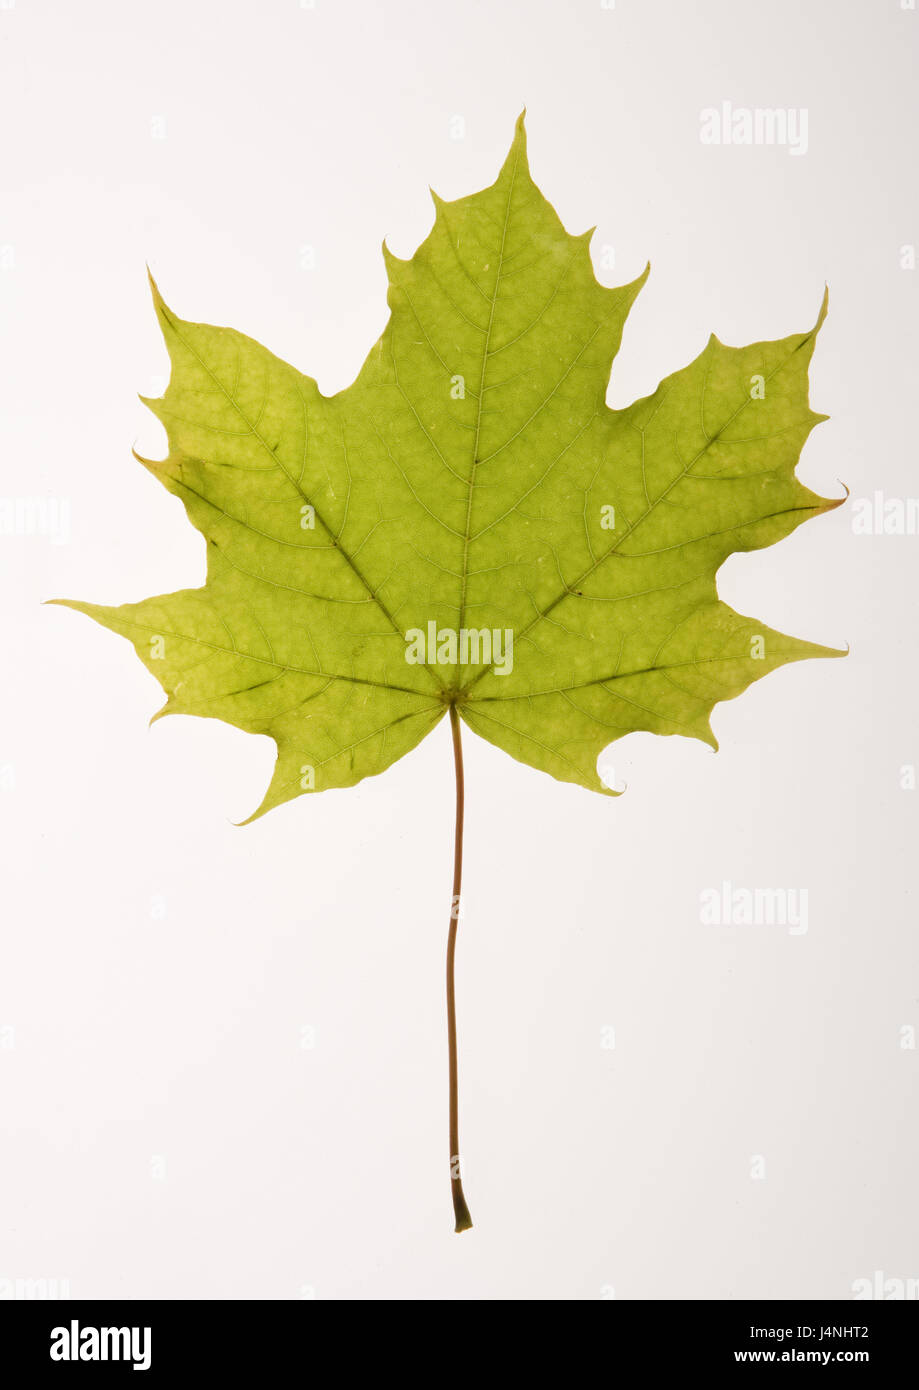 Maple Leaf, verde, hojas de plantas, hojas, maple, Acer, vegetación, naturaleza, estructura, Frei, placa de luz transmitida, temporada, Foto de stock